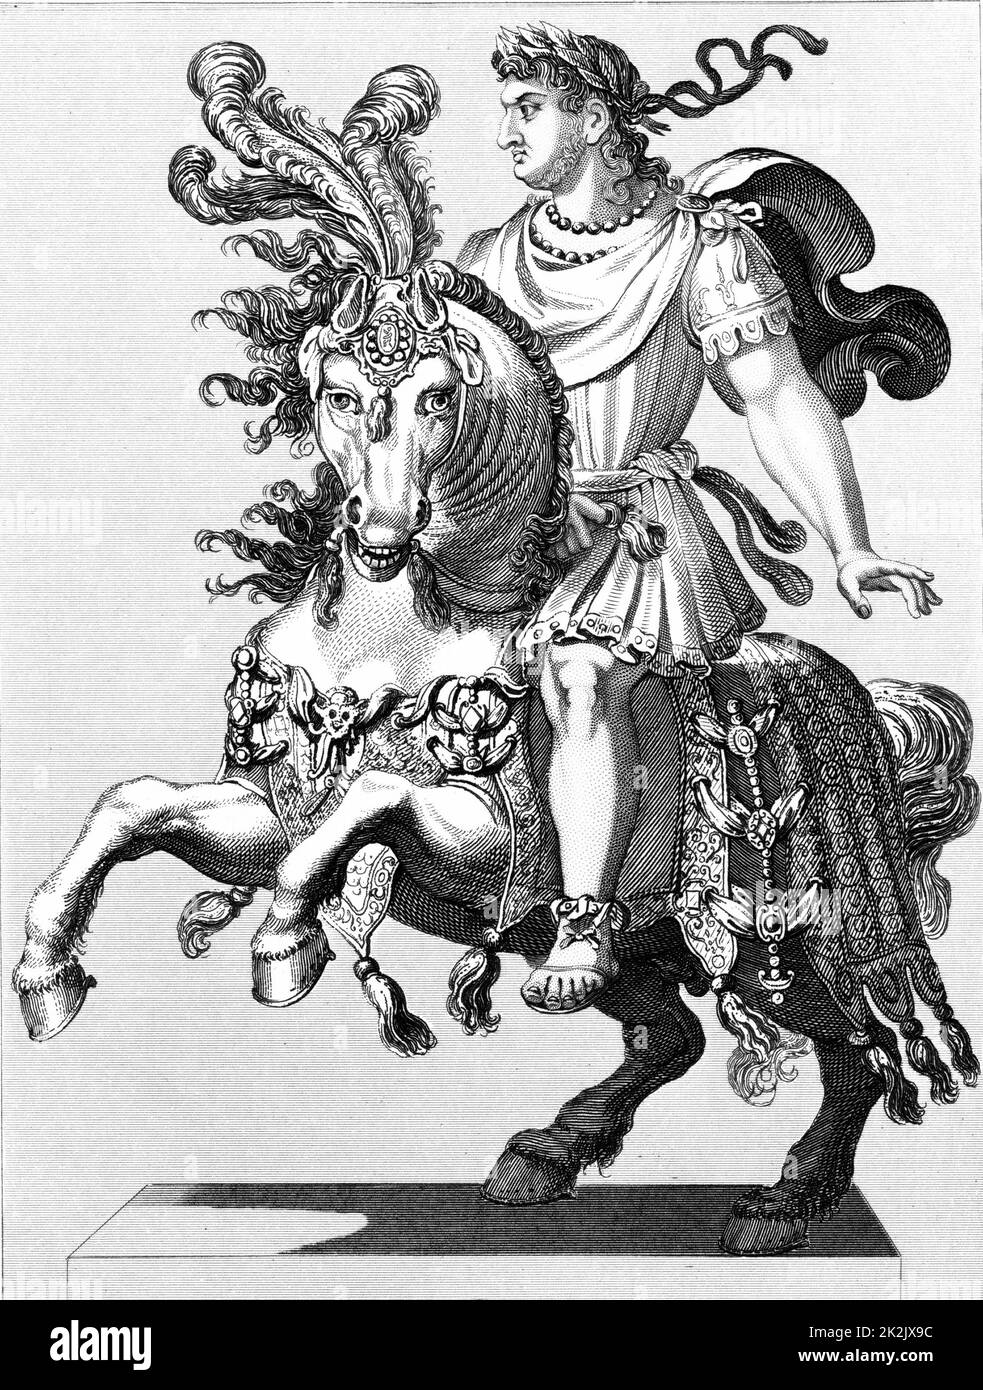 Néron (37-68) empereur romain 54-68. Tyrannique, débauché et extravagant, suicide commis afin d'éviter d'être exécuté. Gravure en acier 1850 Banque D'Images